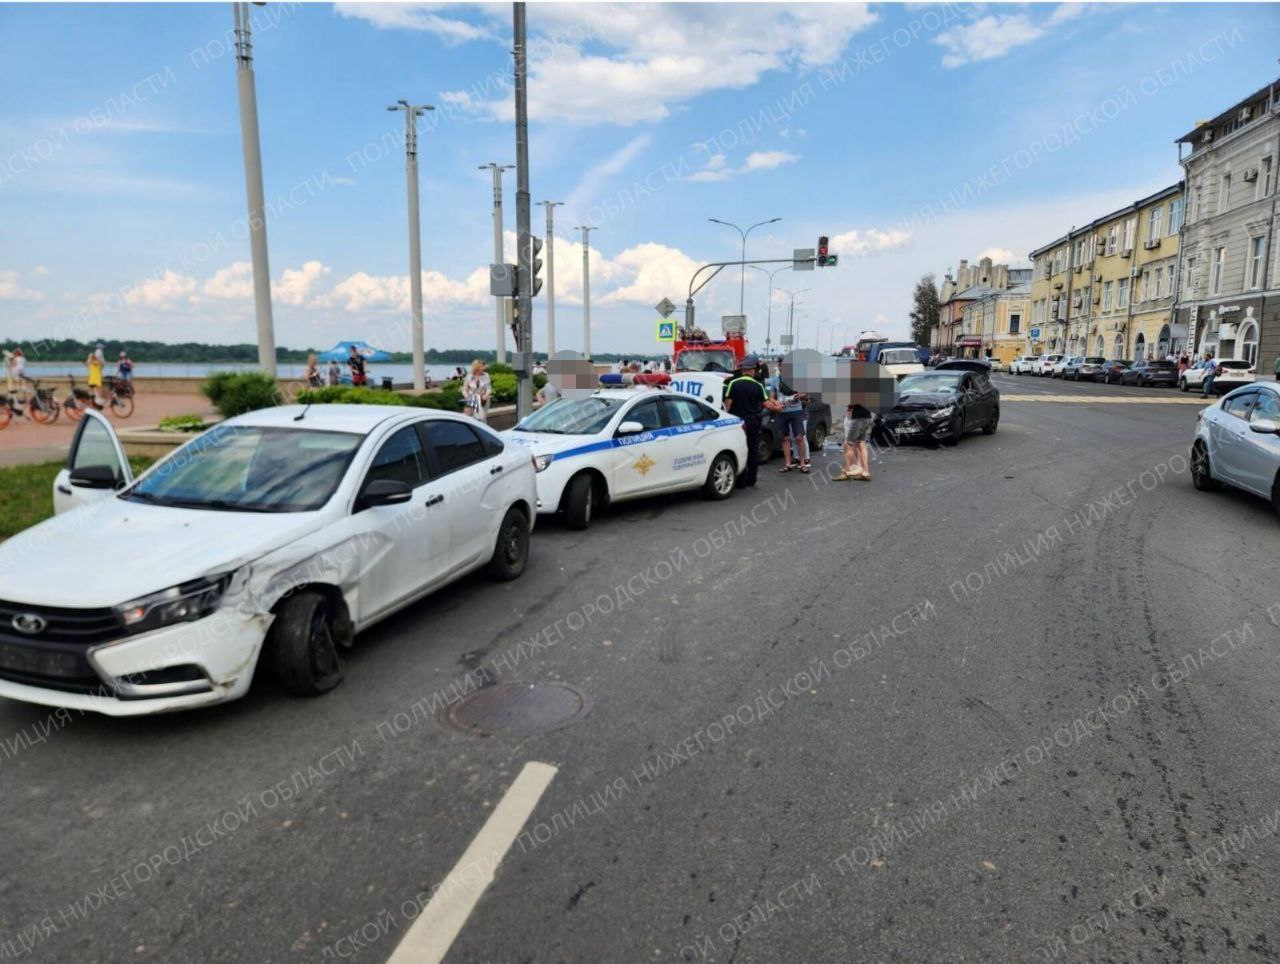 В центре Нижнего Новгорода произошла массовая авария с пострадавшими